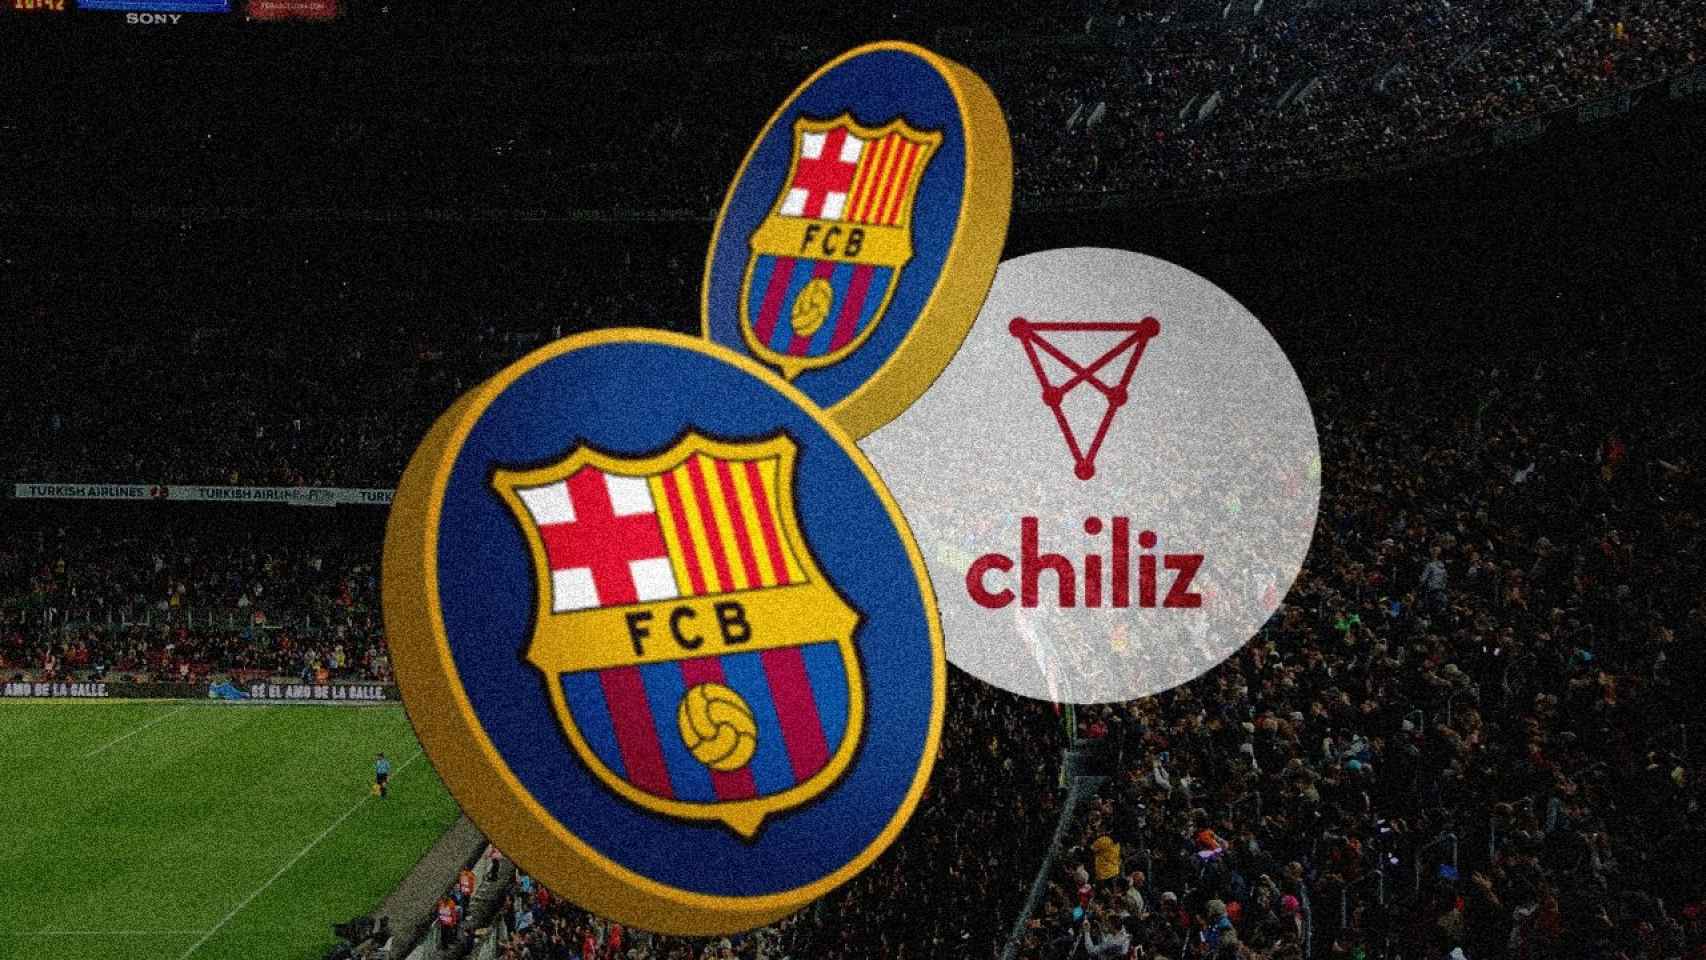 Una imagen promocional del Barça con Chiliz / Redes